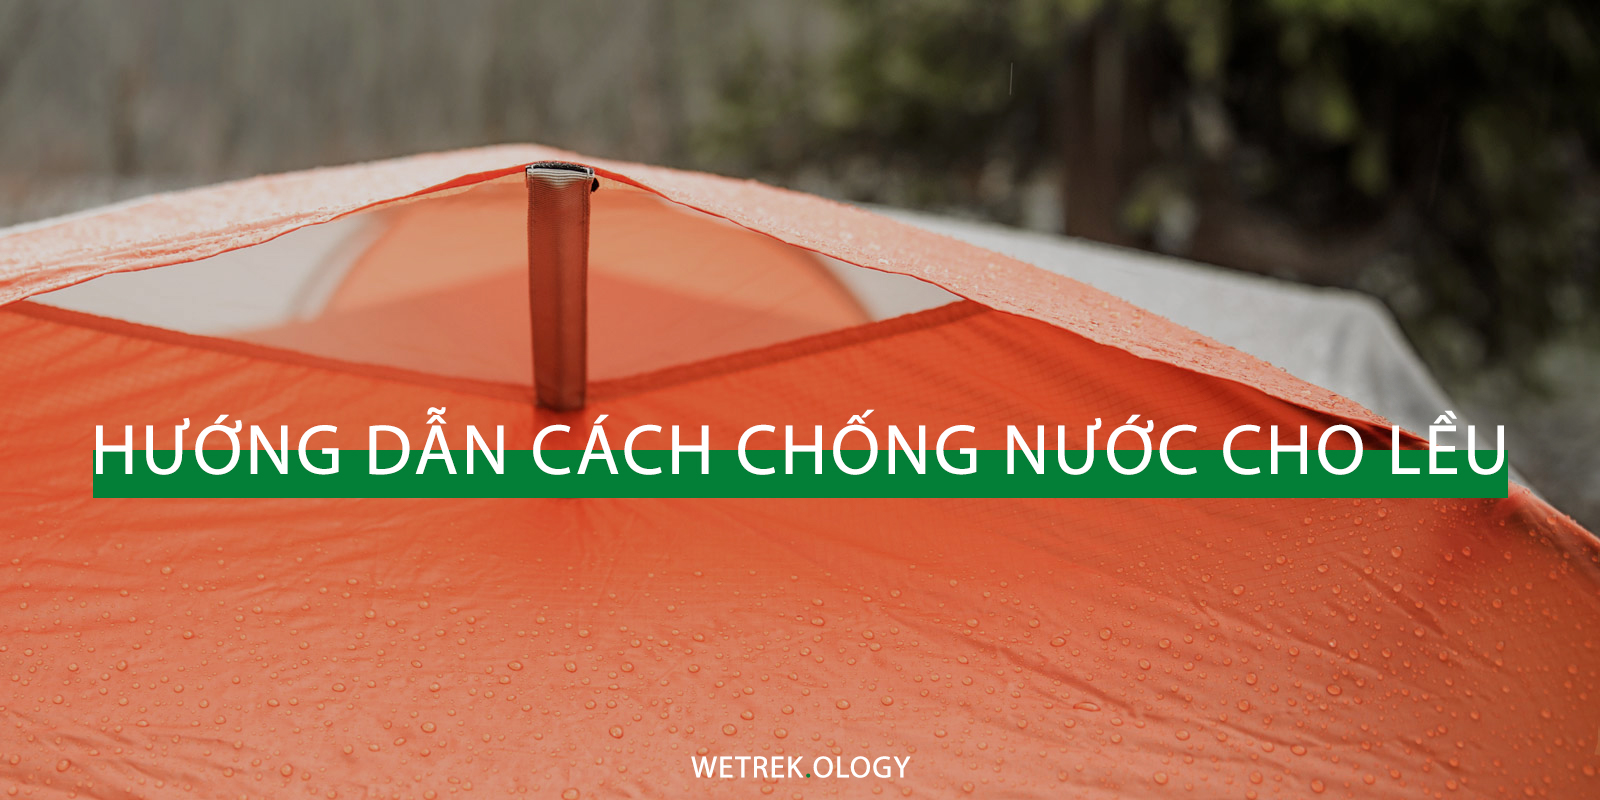 cach-chong-nuoc-cho-leu-wetrekvn